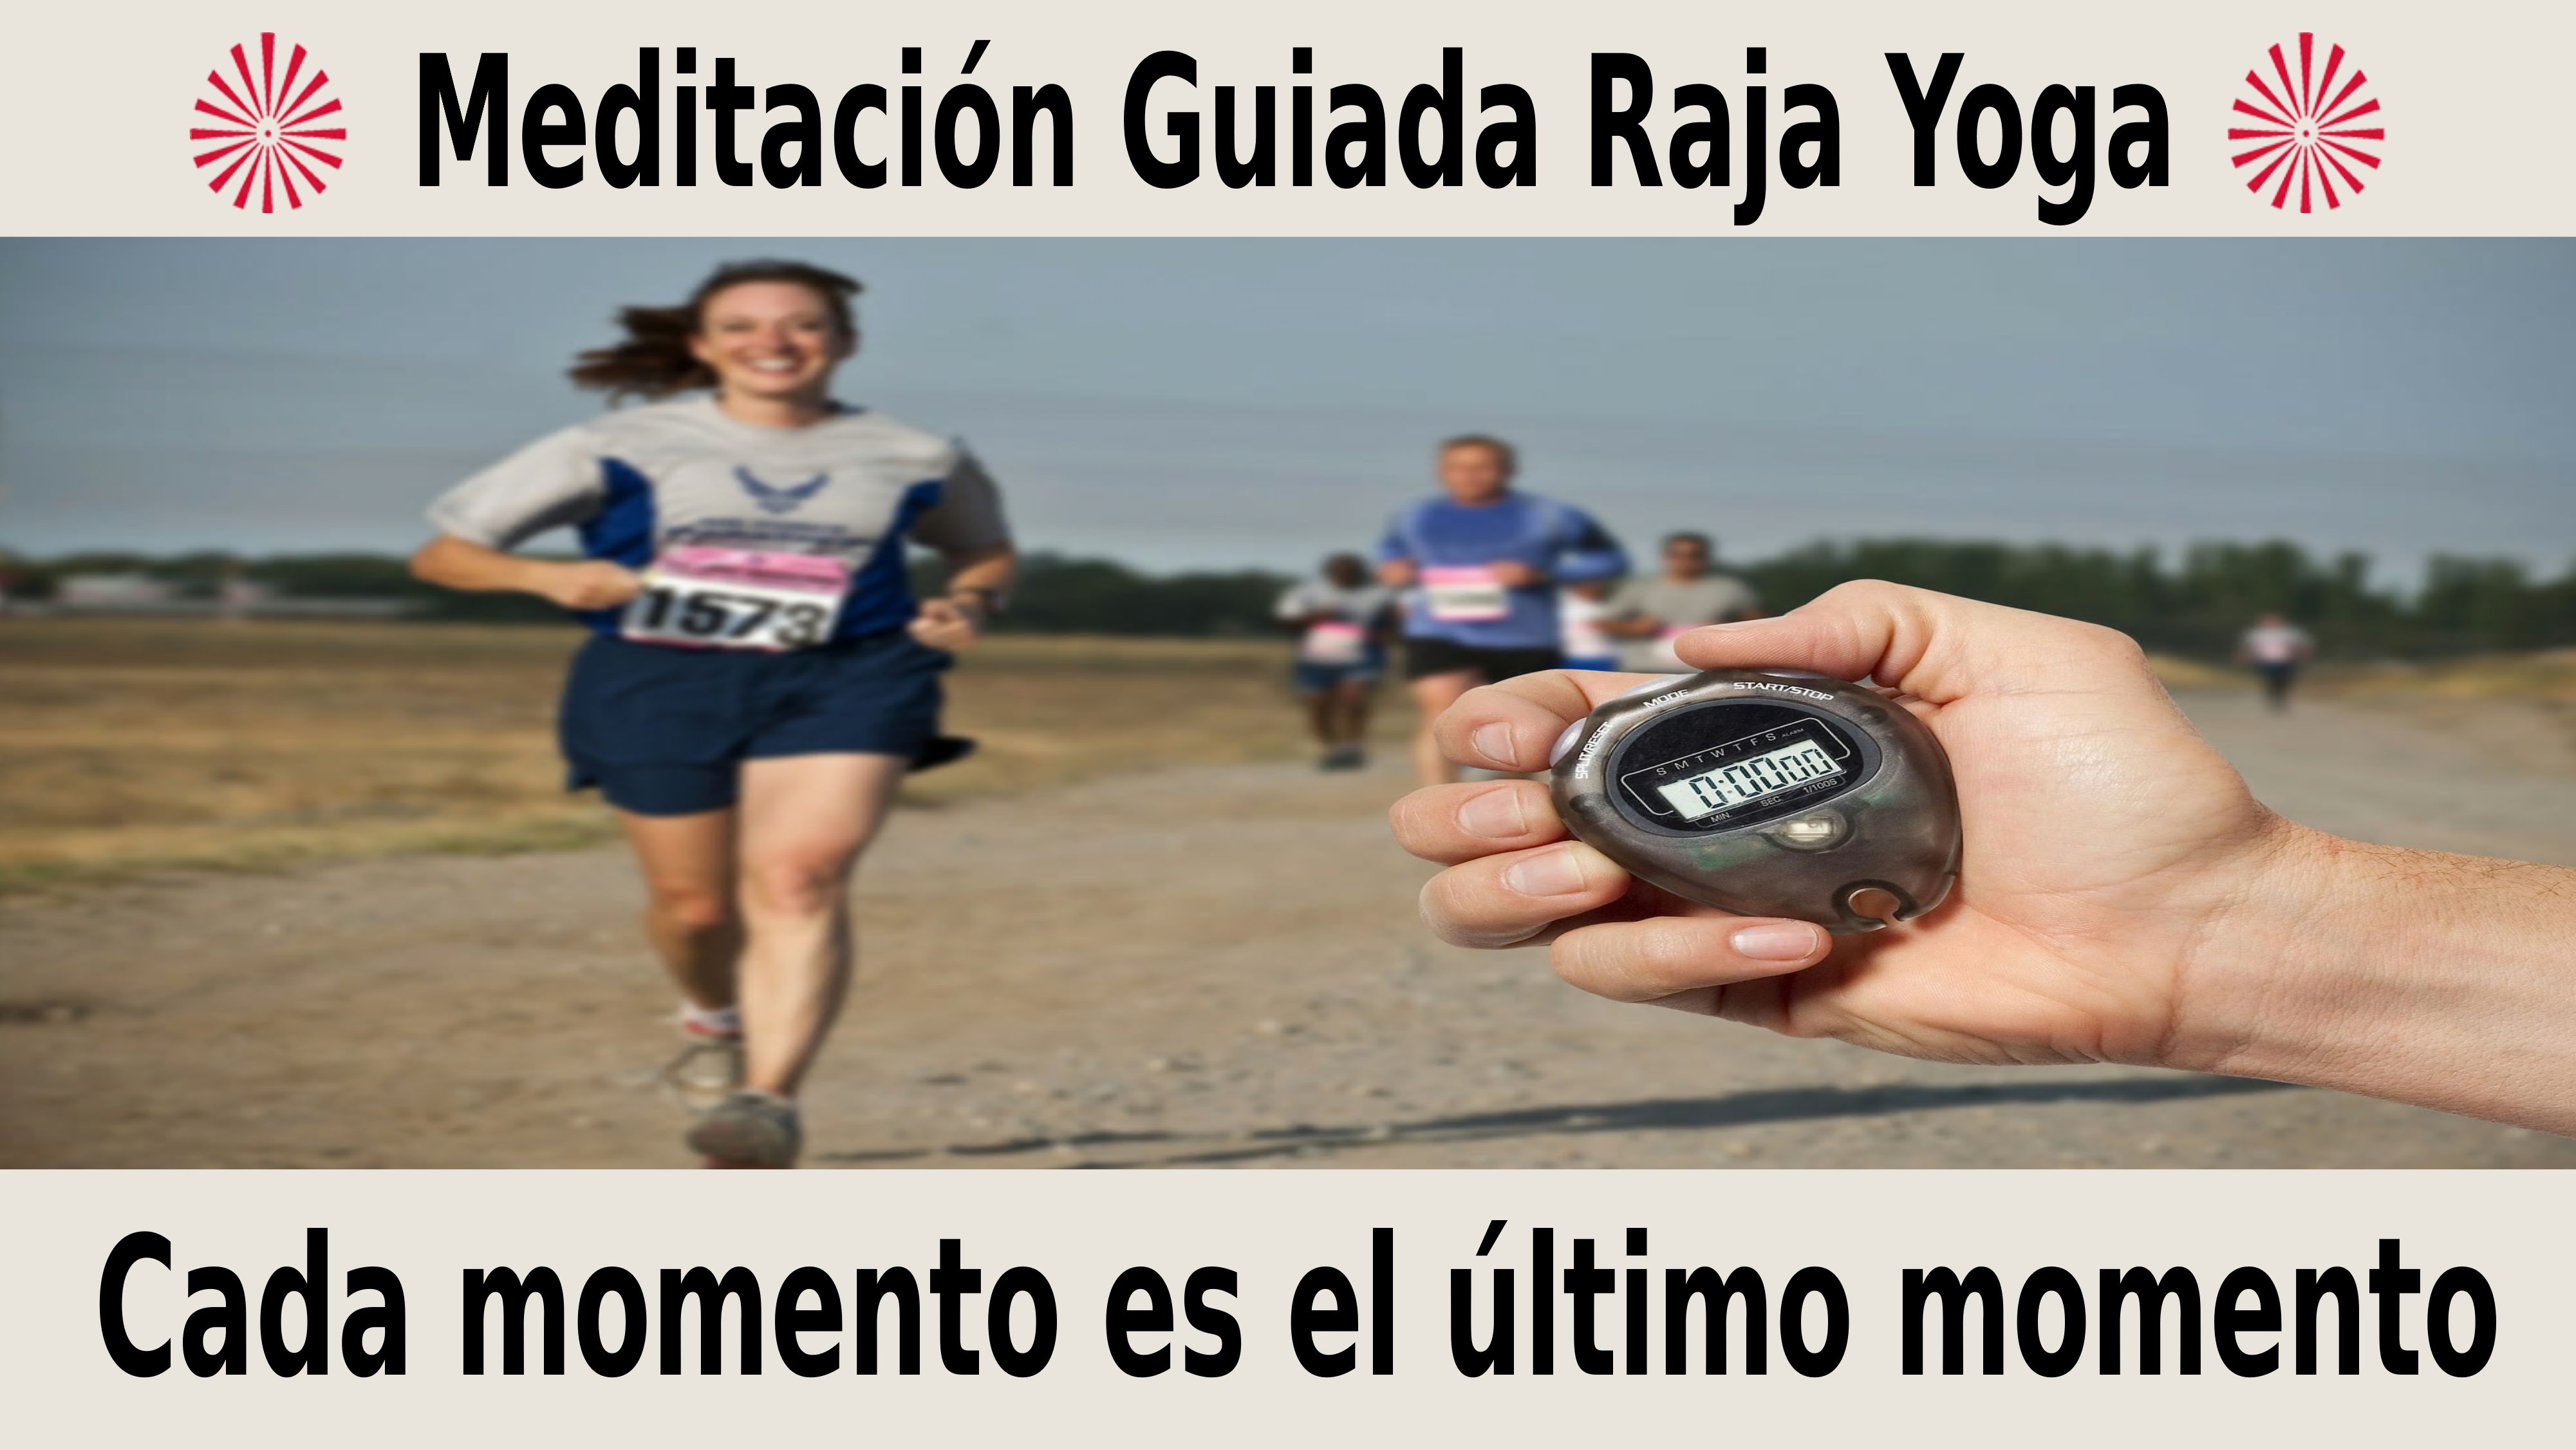 Meditación Raja Yoga Cada momento es el último momento (2 Noviembre 2020) On-line desde Madrid